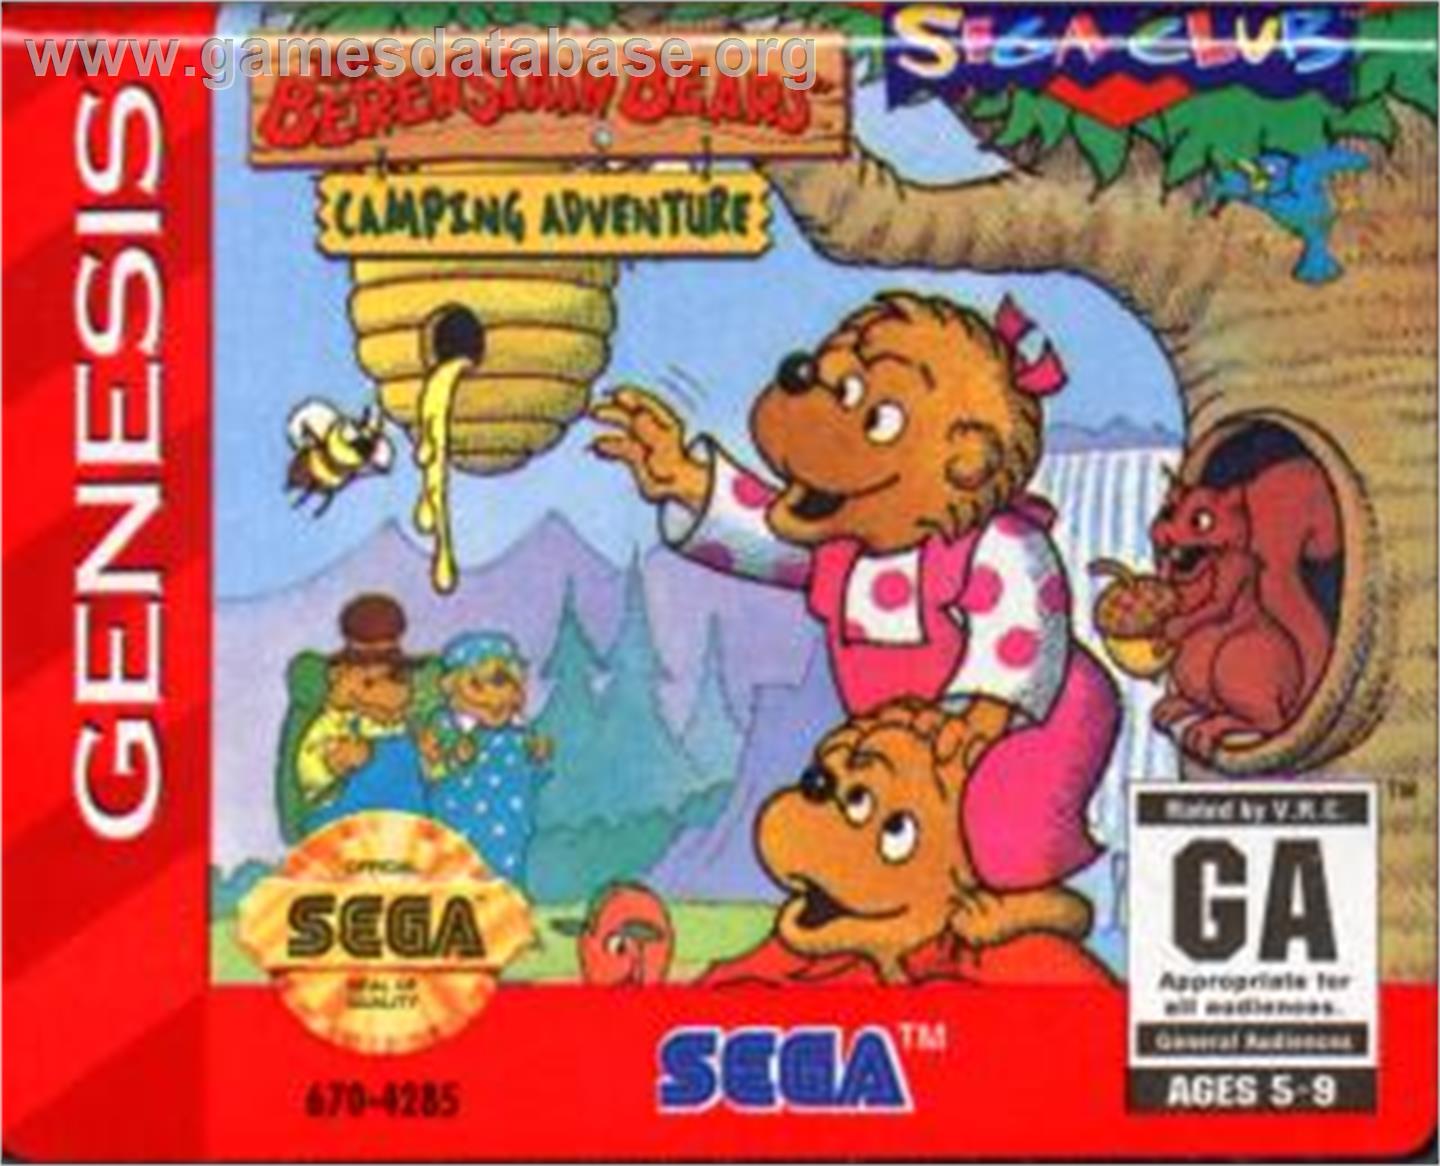 Berenstain Bears' Camping Adventure, The - Sega Nomad - Artwork - Cartridge